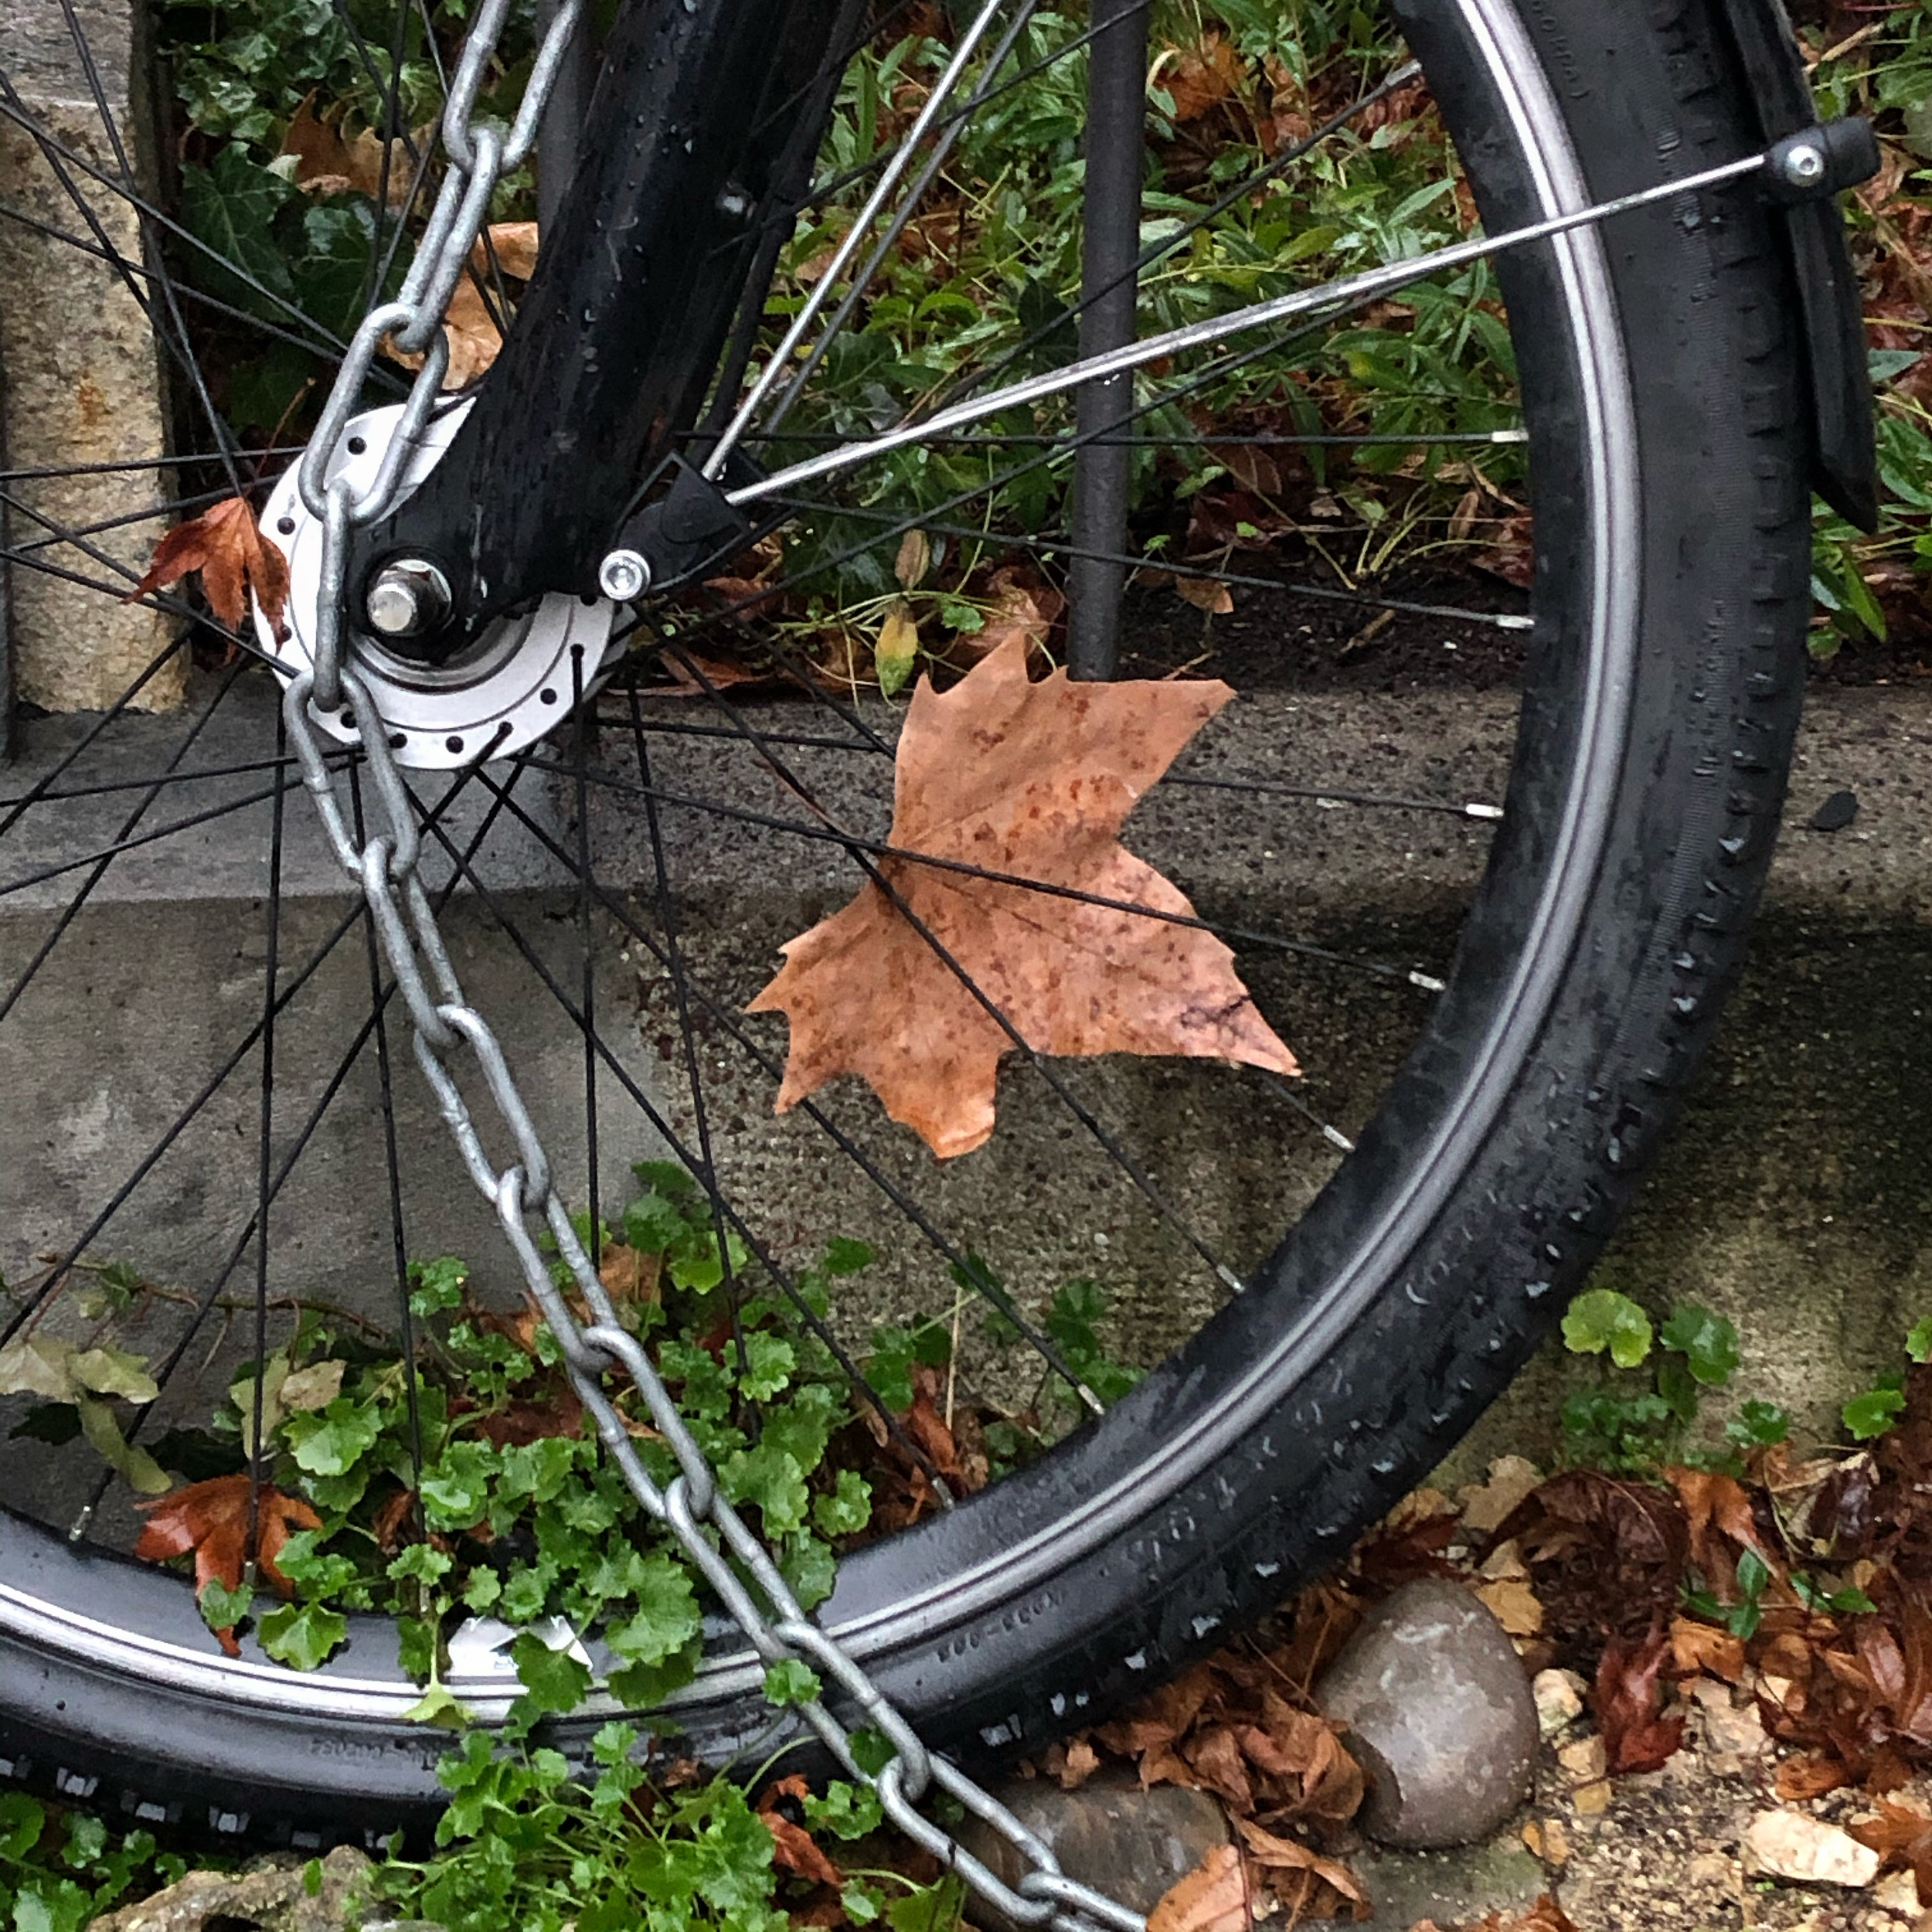 Bike, chain, leaves, and stone